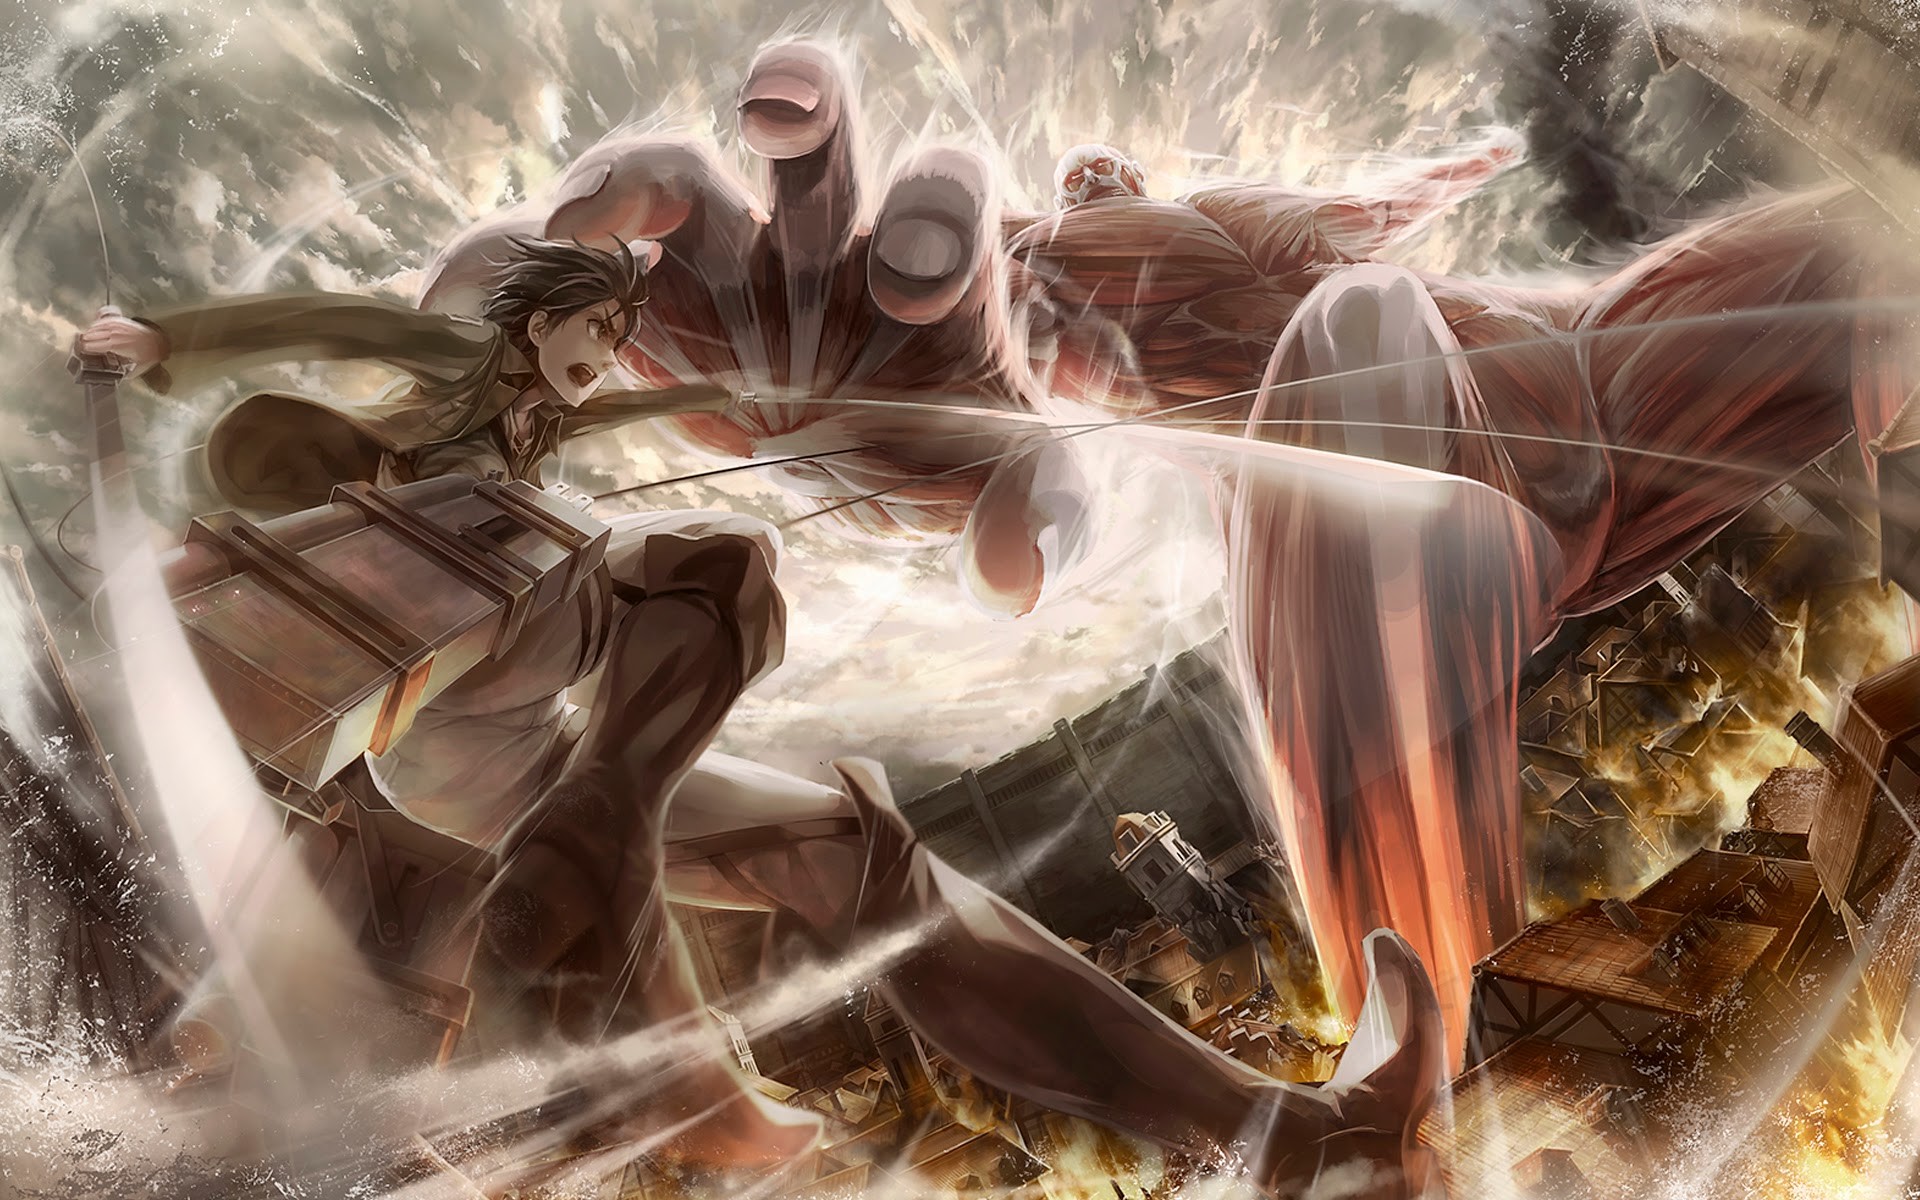 Colossal Titan vs Eren Jaeger: Trong cuộc tranh đấu giữa Colossal Titan và Eren Jaeger, ai sẽ là người chiến thắng? Đây là một cuộc chiến oanh liệt trong seri Attack on Titan, mà bạn có thể trực tiếp chứng kiến qua các hình ảnh đầy kịch tính.